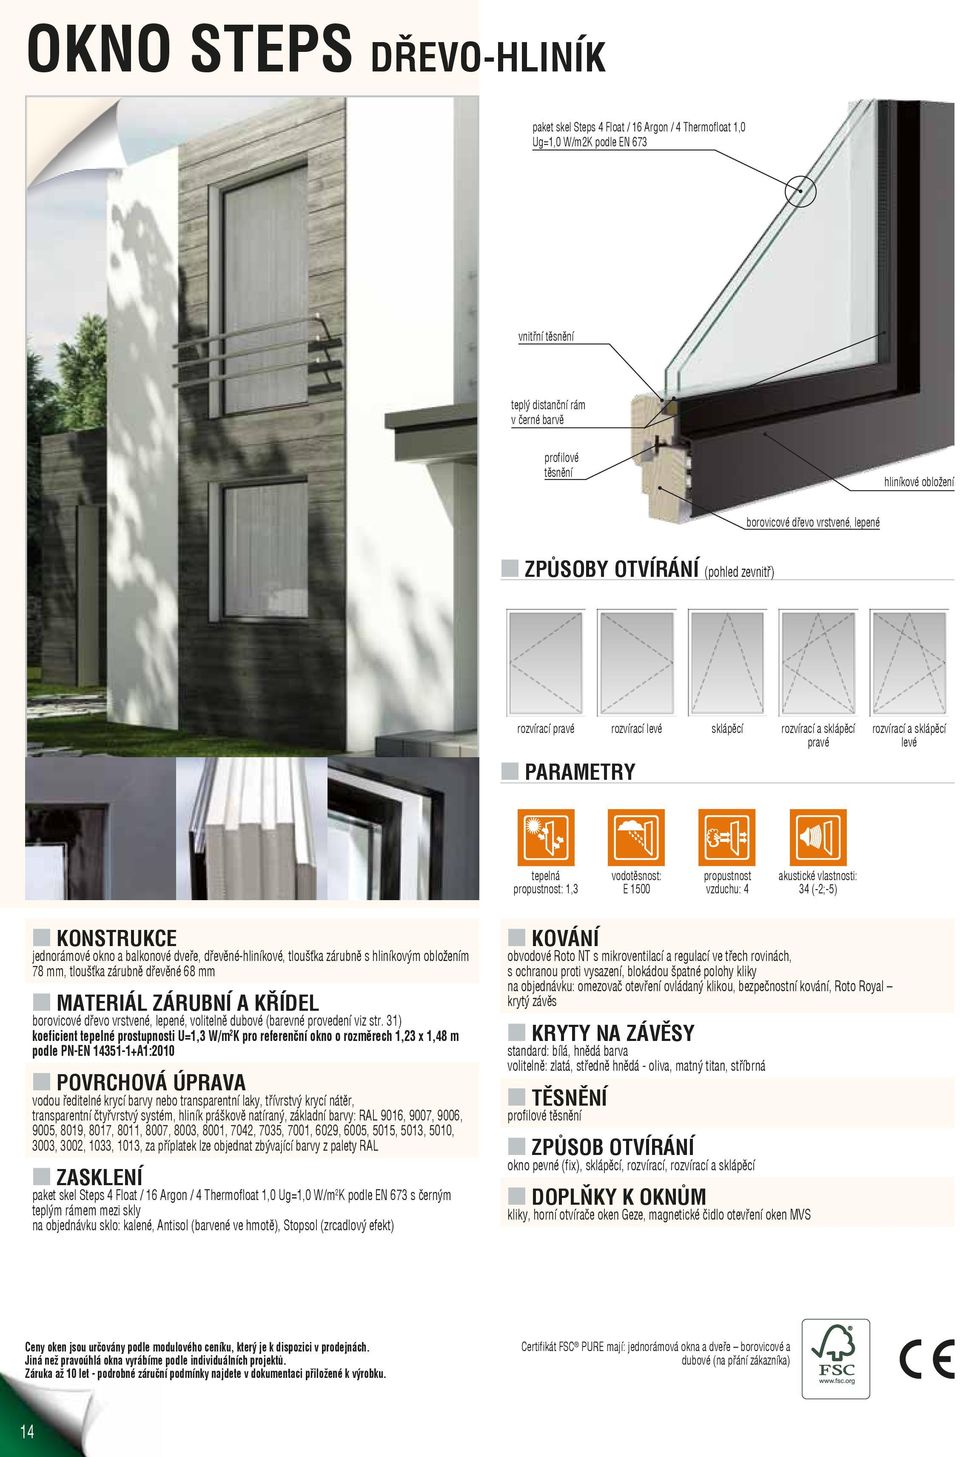 vodotěsnost: E 1500 propustnost vzduchu: 4 akustické vlastnosti: 34 (-2;-5) jednorámové okno a balkonové dveře, dřevěné-hliníkové, tloušťka zárubně s hliníkovým obložením 78 mm, tloušťka zárubně